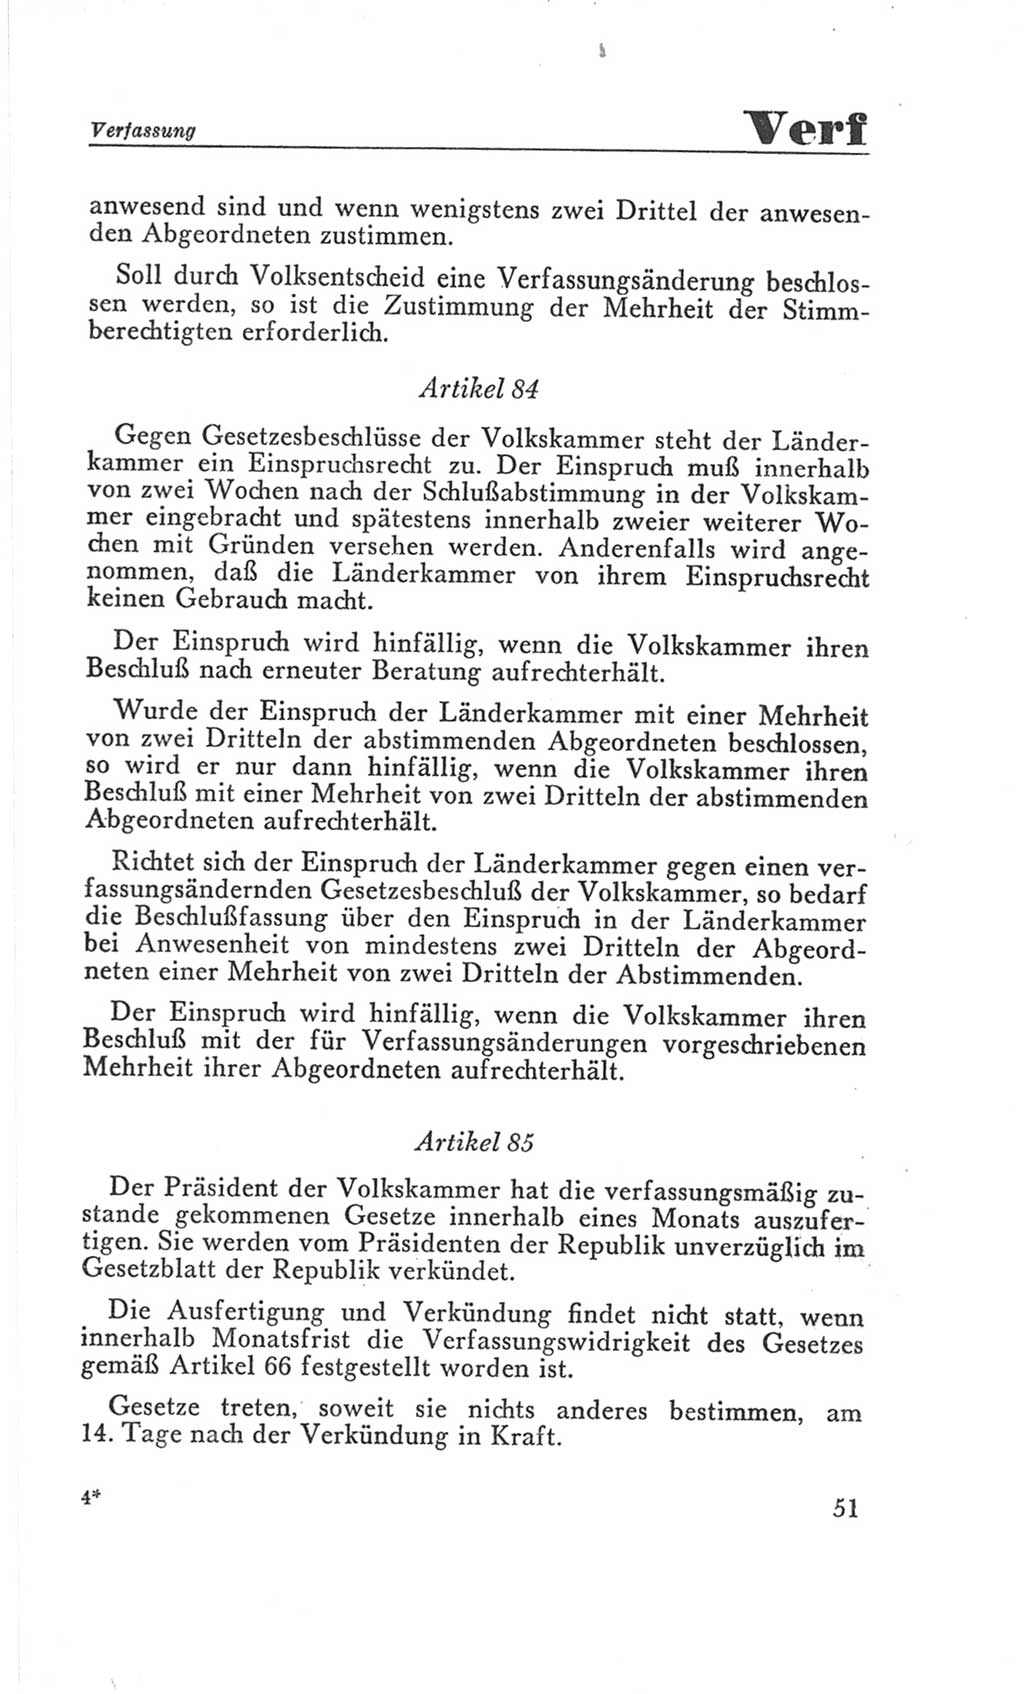 Handbuch der Volkskammer (VK) der Deutschen Demokratischen Republik (DDR), 3. Wahlperiode 1958-1963, Seite 51 (Hdb. VK. DDR 3. WP. 1958-1963, S. 51)